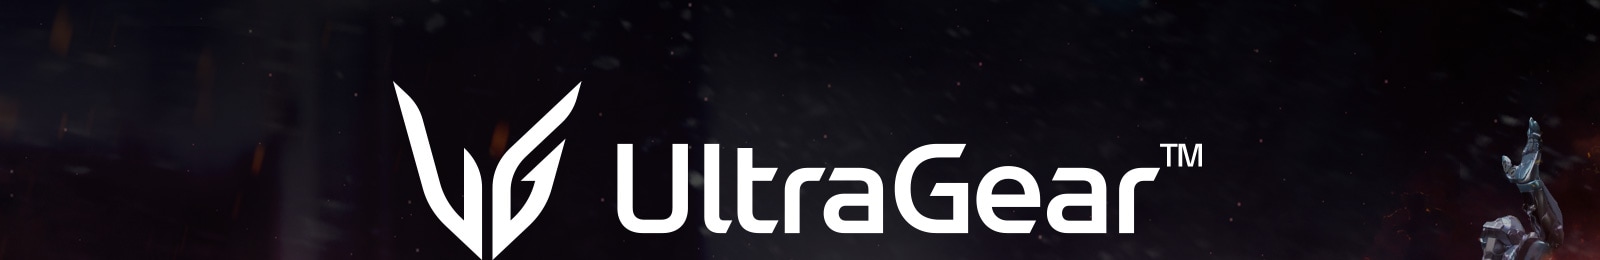 Logo LG UltraGear